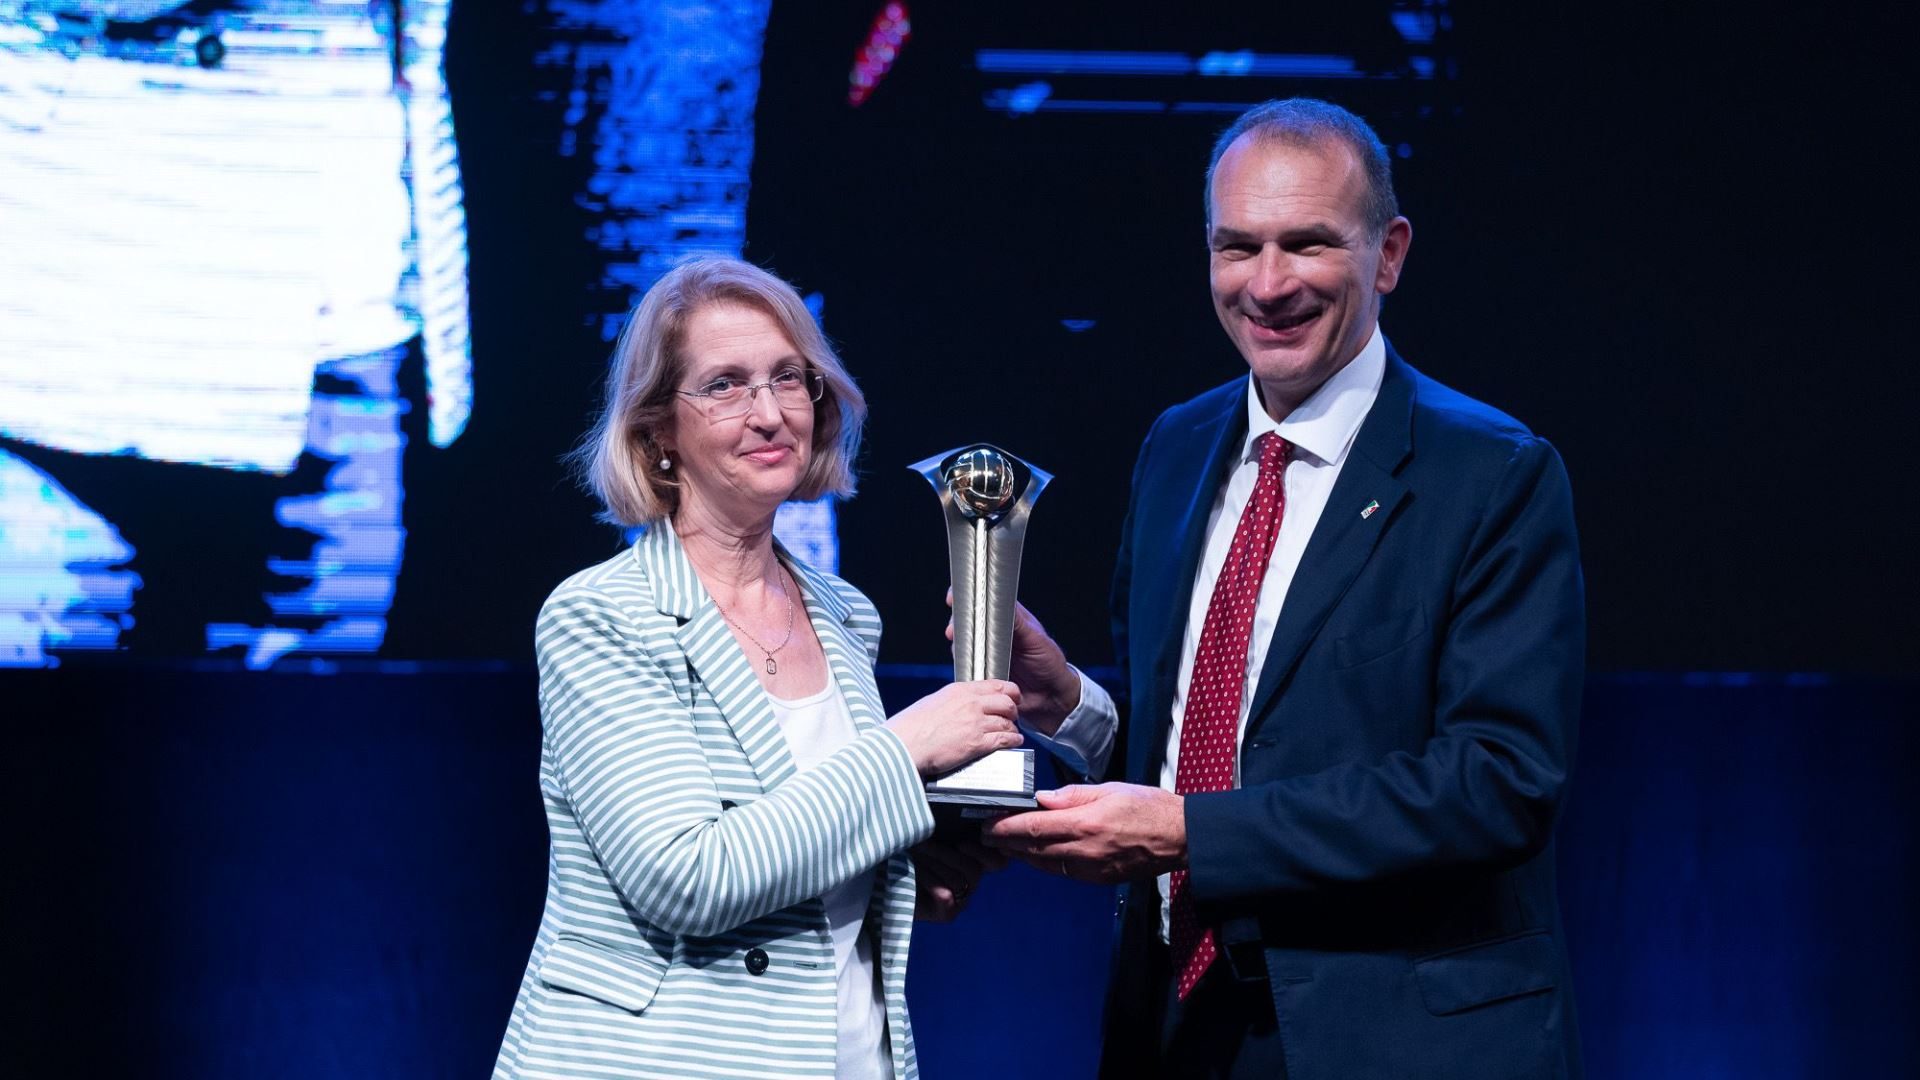 Il direttore generale del Consorzio Vero Volley, Ilaria Conciato, riceve da Massimo Righi, presidente della Lega Volley, un riconoscimento per la conquista della CEV Cup 2022